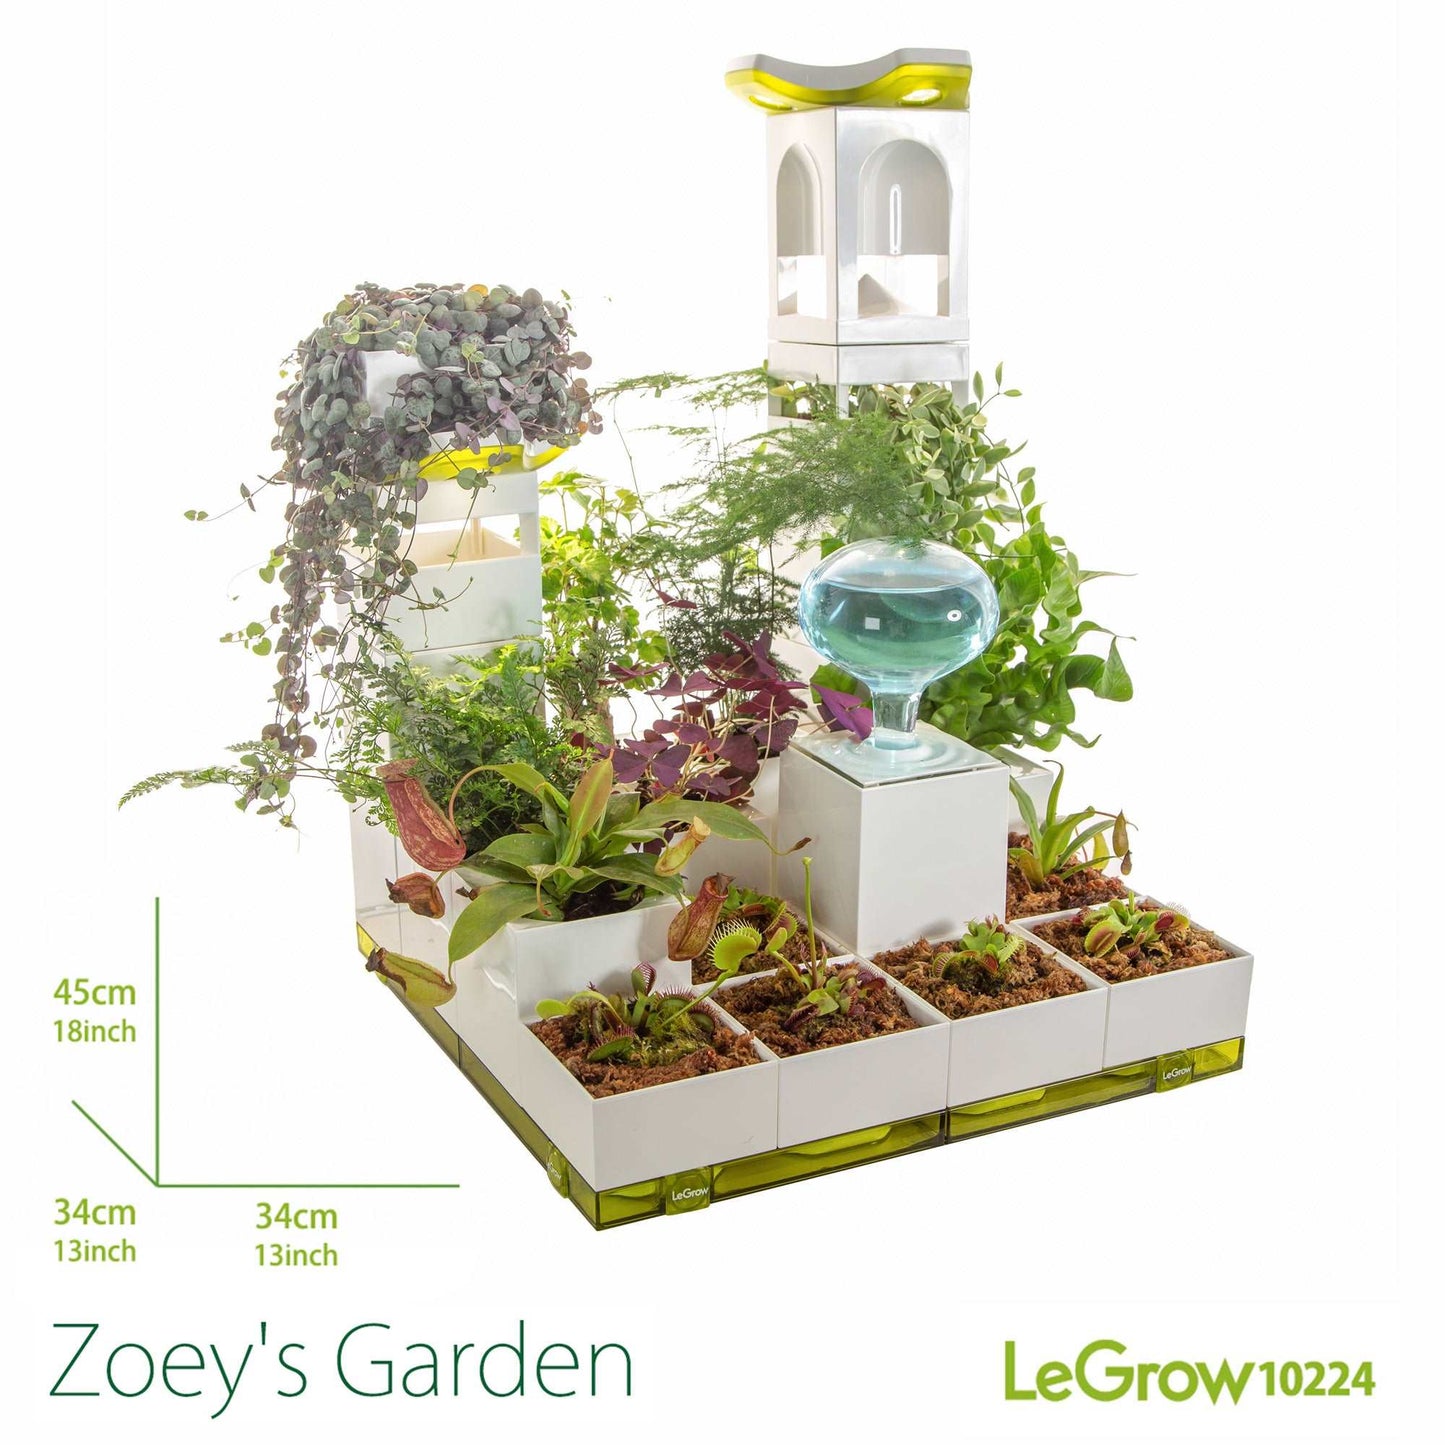 Zoey's Garden |  LeGrow 10224